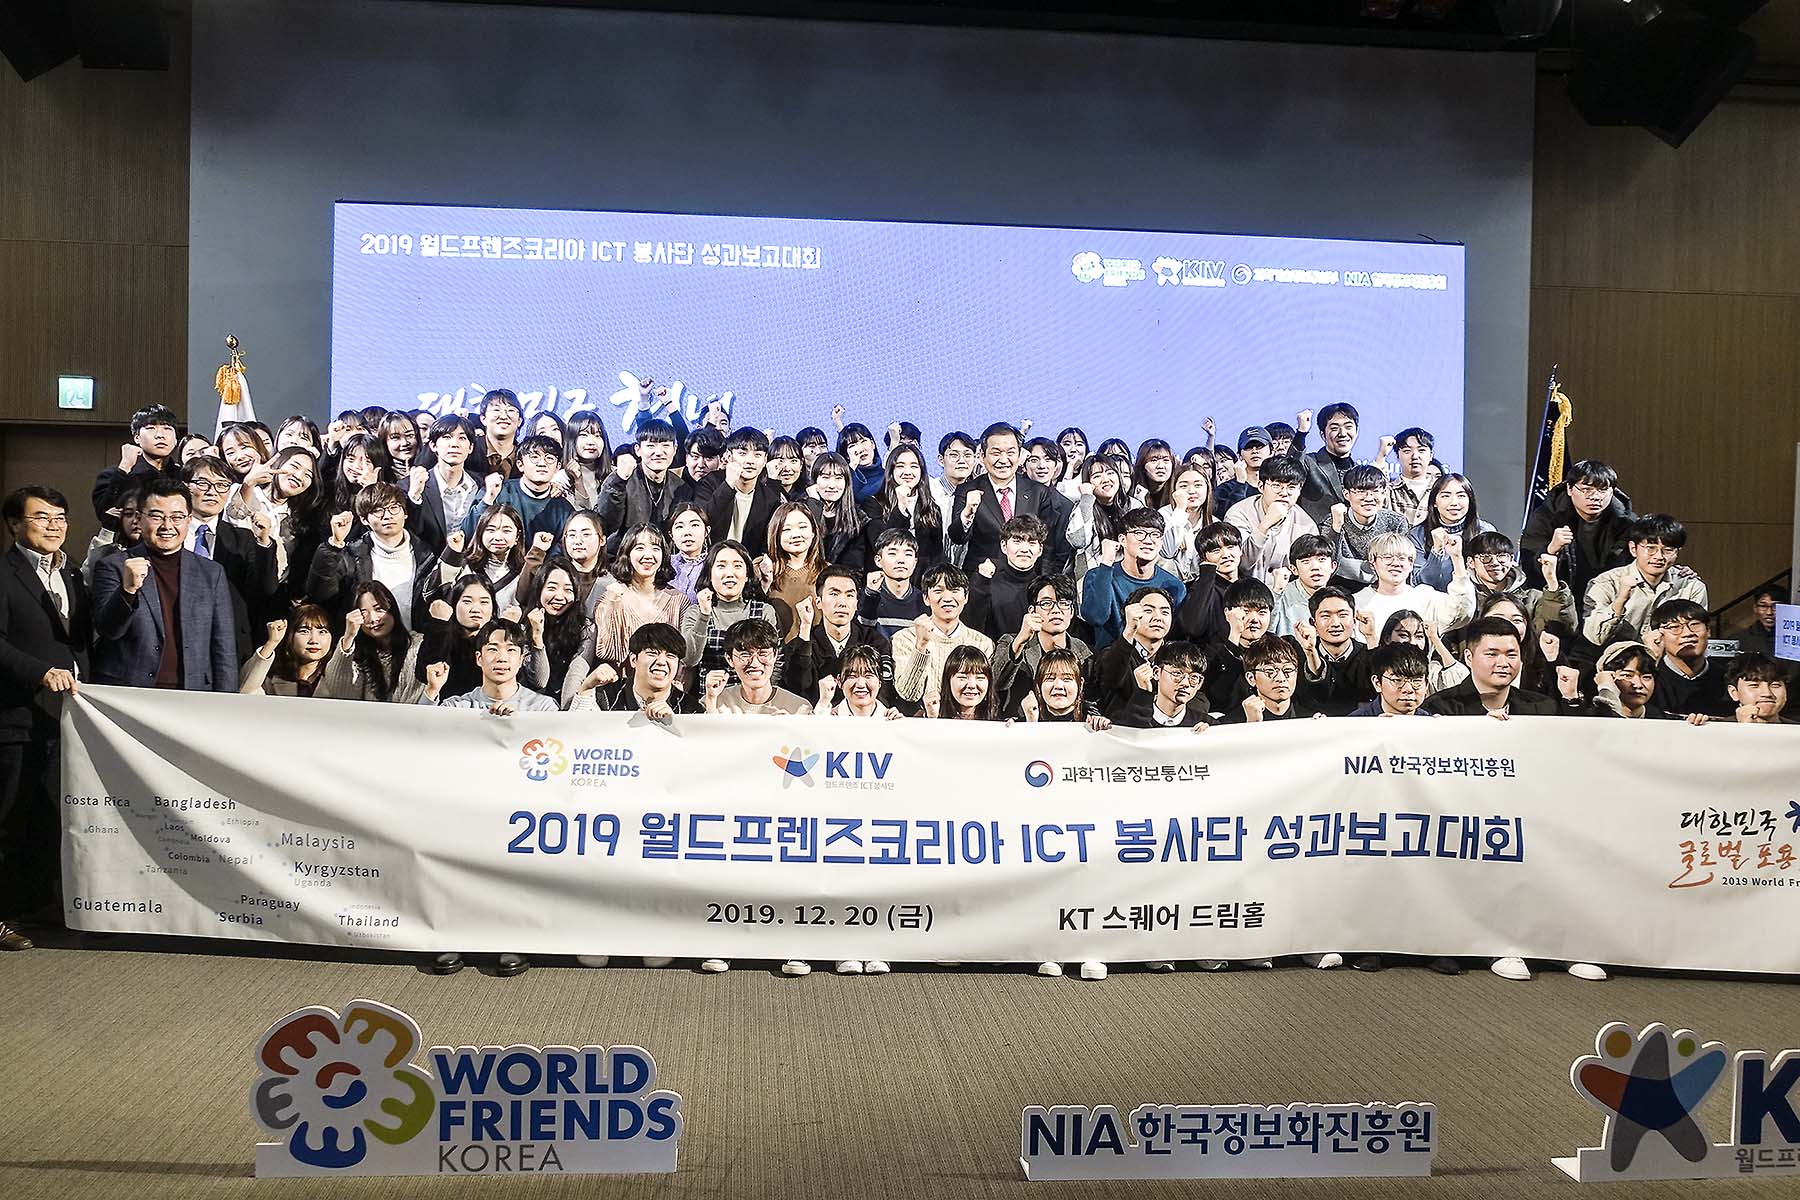 2019 월드프렌즈 ICT 봉사단 우수상 선정, 한국정보화진흥원장상 수상 2번째 파일